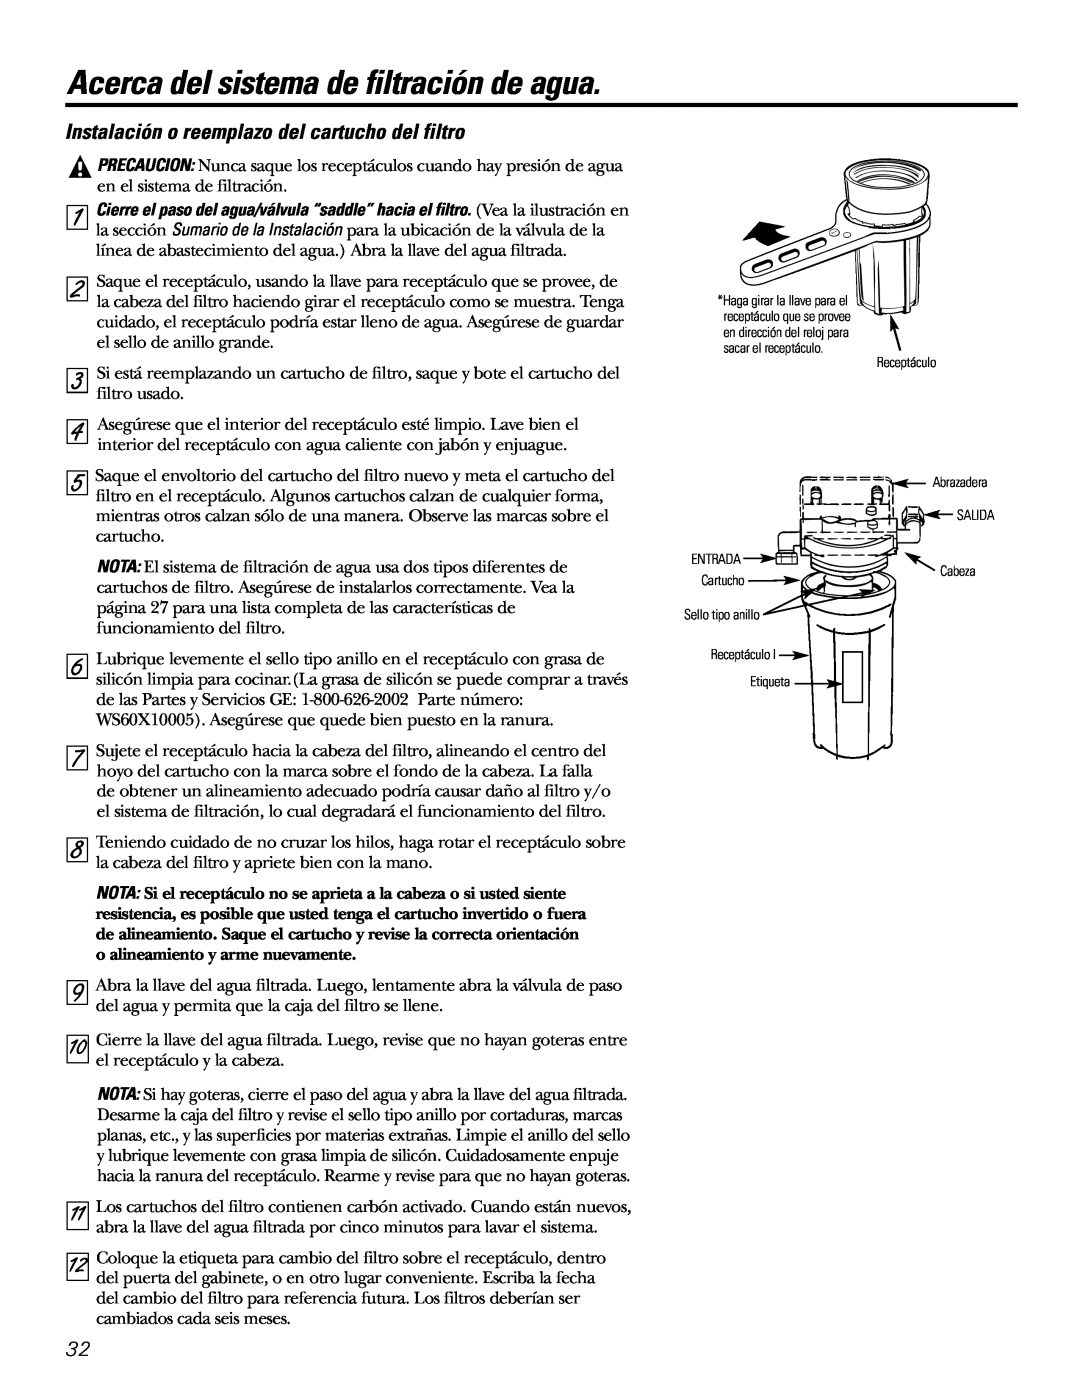 GE 215C1044P010-3 owner manual Instalación o reemplazo del cartucho del filtro, Acerca del sistema de filtración de agua 